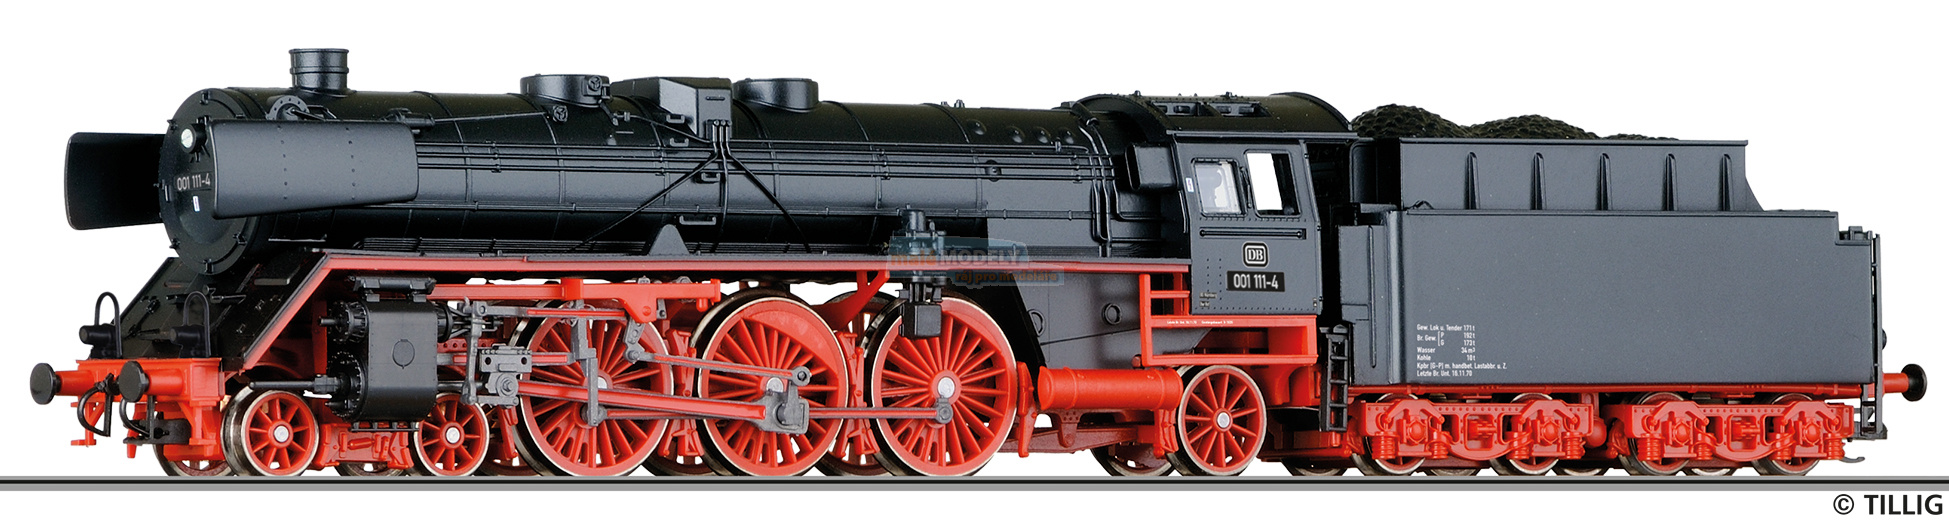 Parní lokomotiva BR 001 